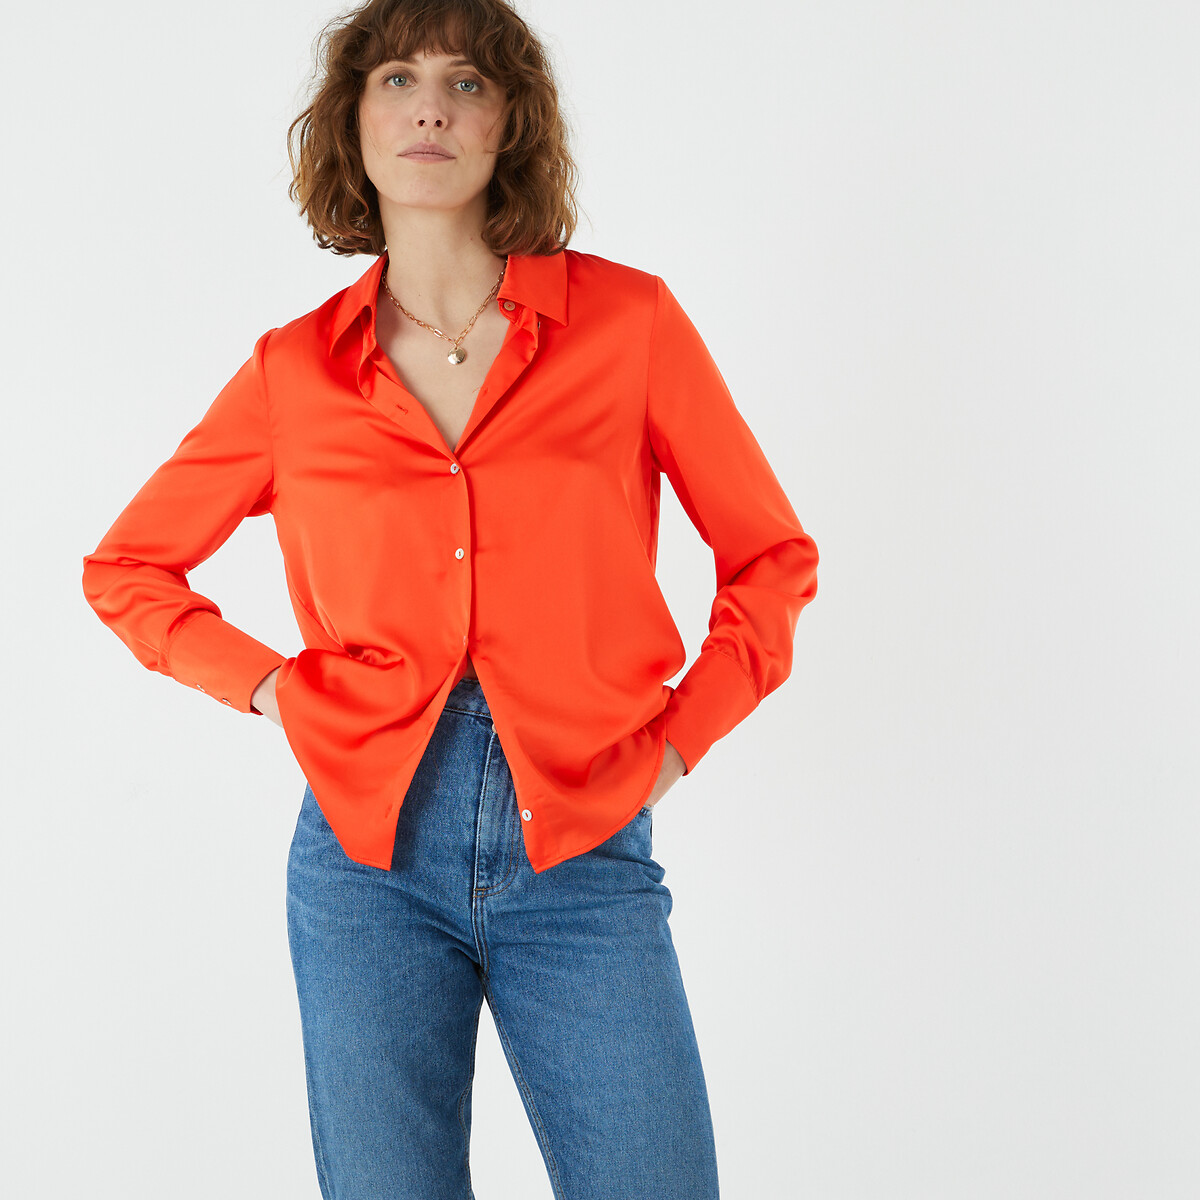 Рубашка с длинными рукавами  50 (FR) - 56 (RUS) оранжевый LaRedoute, размер 50 (FR) - 56 (RUS) Рубашка с длинными рукавами  50 (FR) - 56 (RUS) оранжевый - фото 5